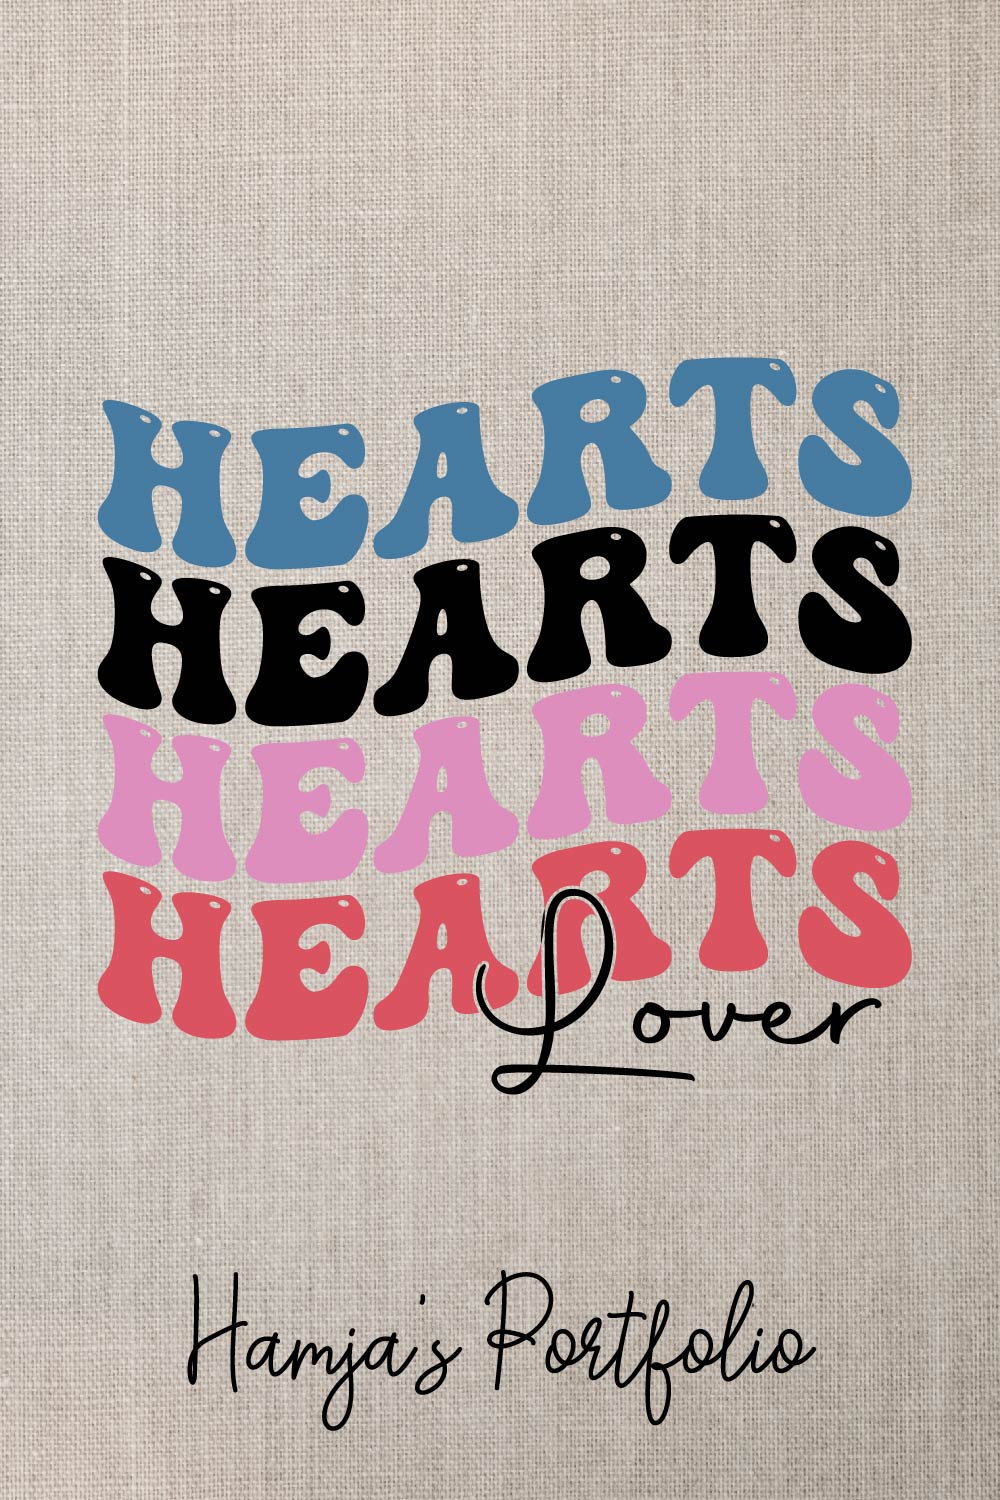 Hearts Lover Bundle Svg pinterest preview image.